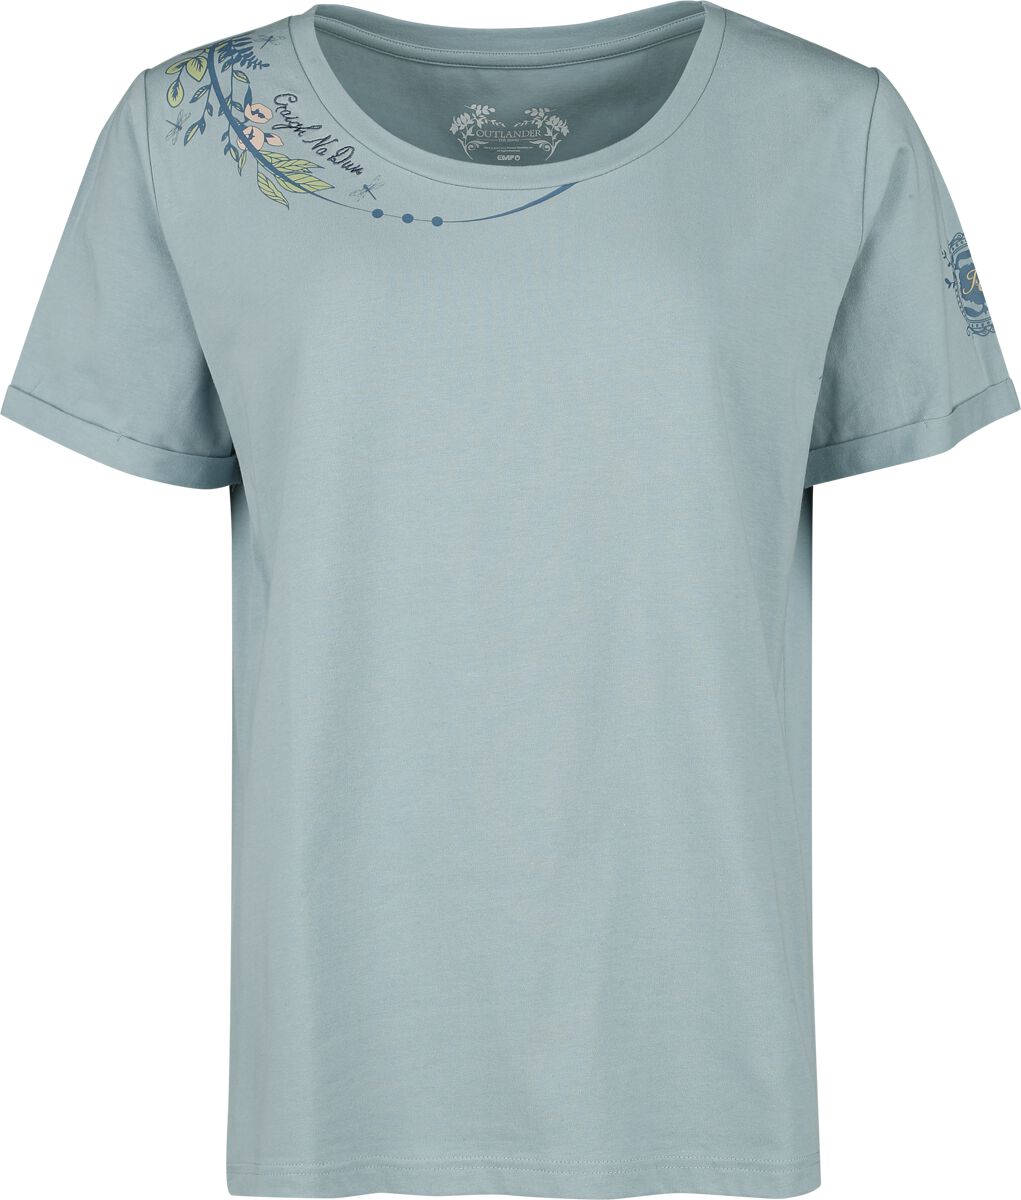 Outlander Craigh Na Dun T-Shirt blau in XL